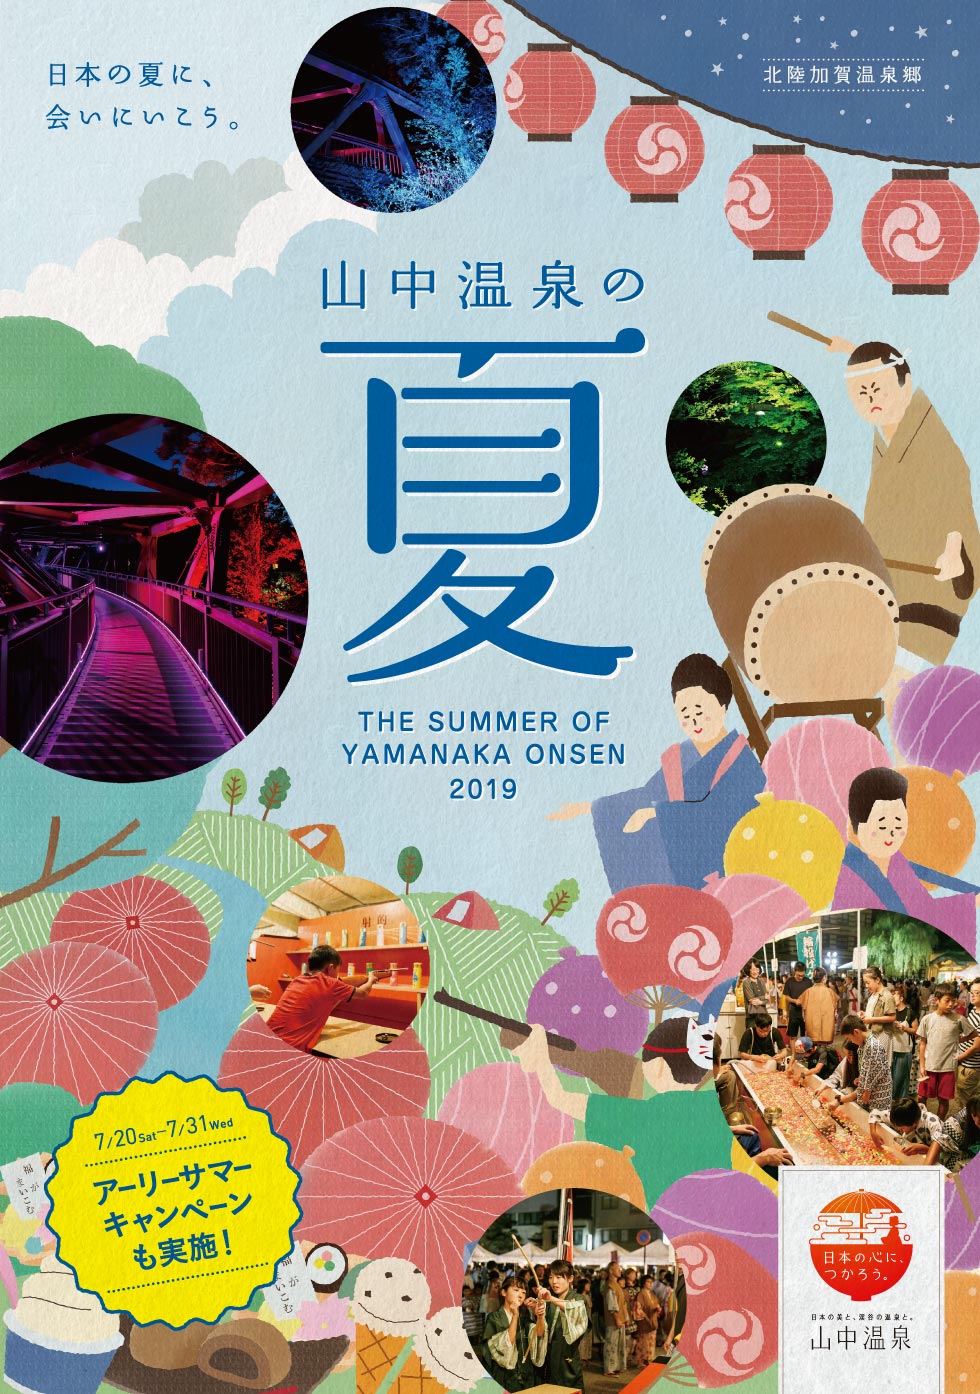 日本の夏に、
会いにいこう。山中温泉の夏 THE SUMMER OF YAMANAKA ONSEN 2019